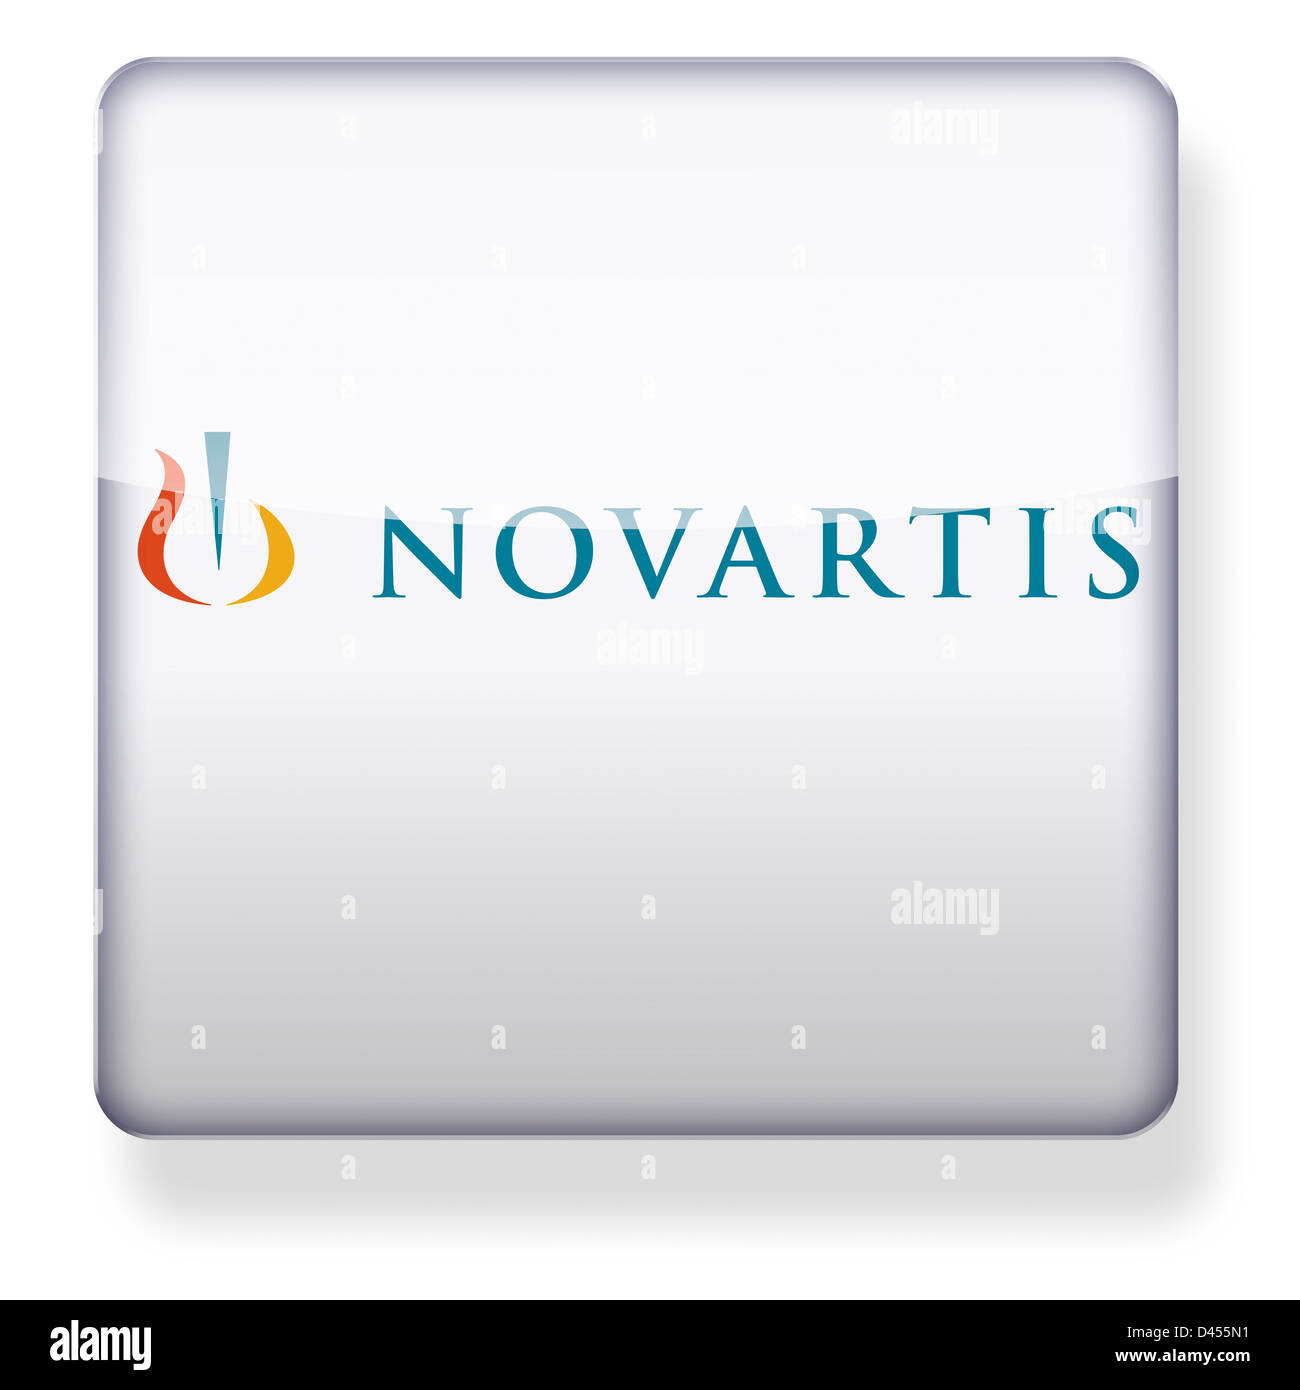 Novartis logo as an app icon. Clipping path included. Stock Photo